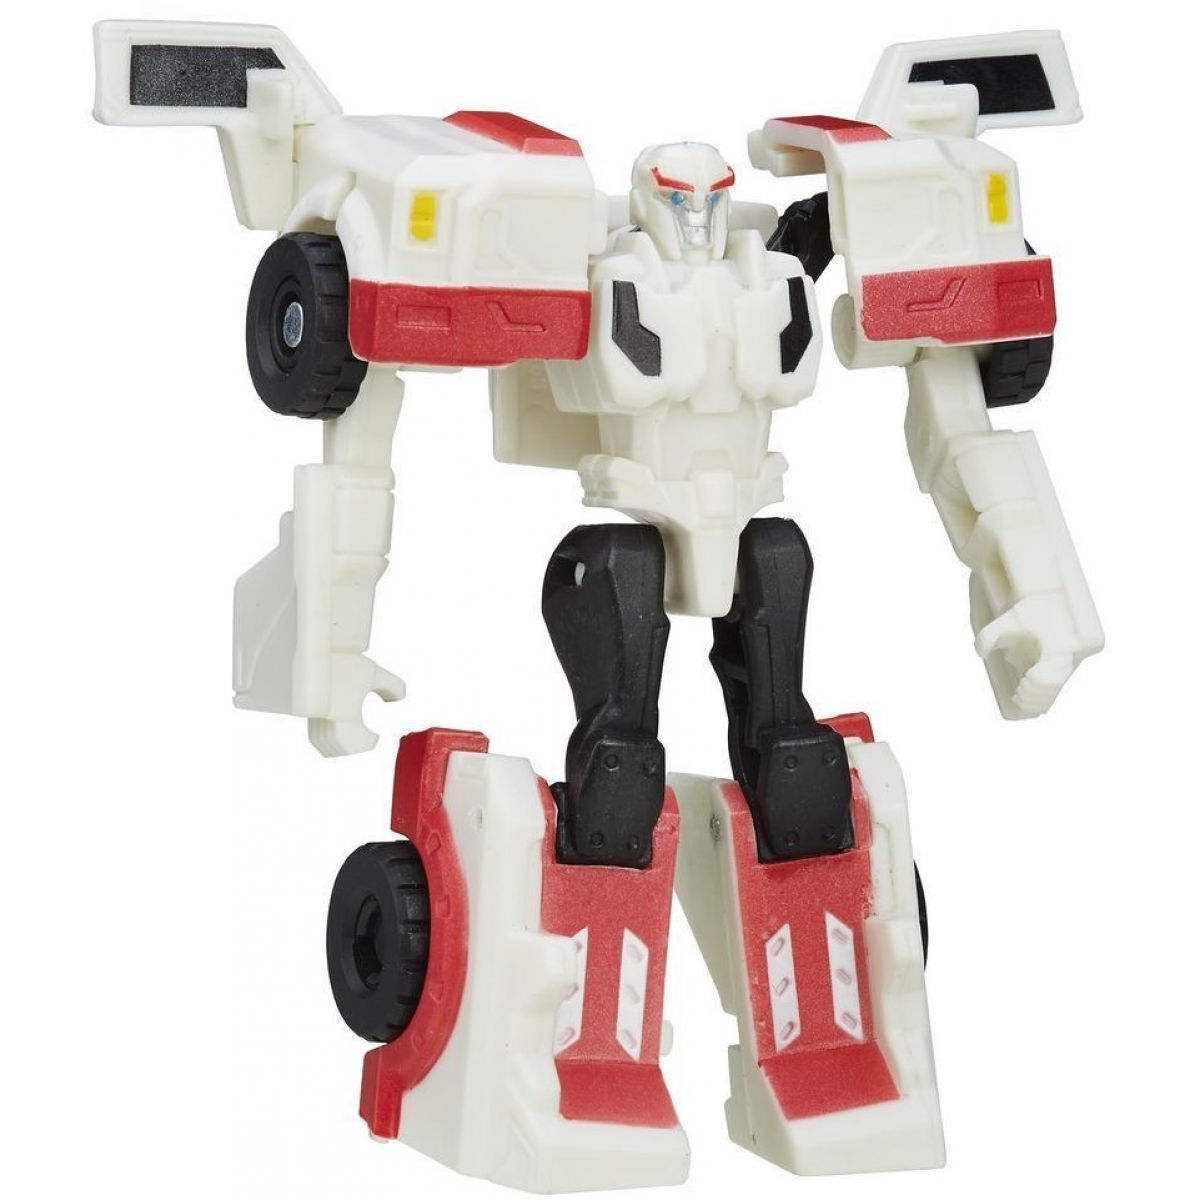 Transformers RID základní charakter - Autobot Ratchet